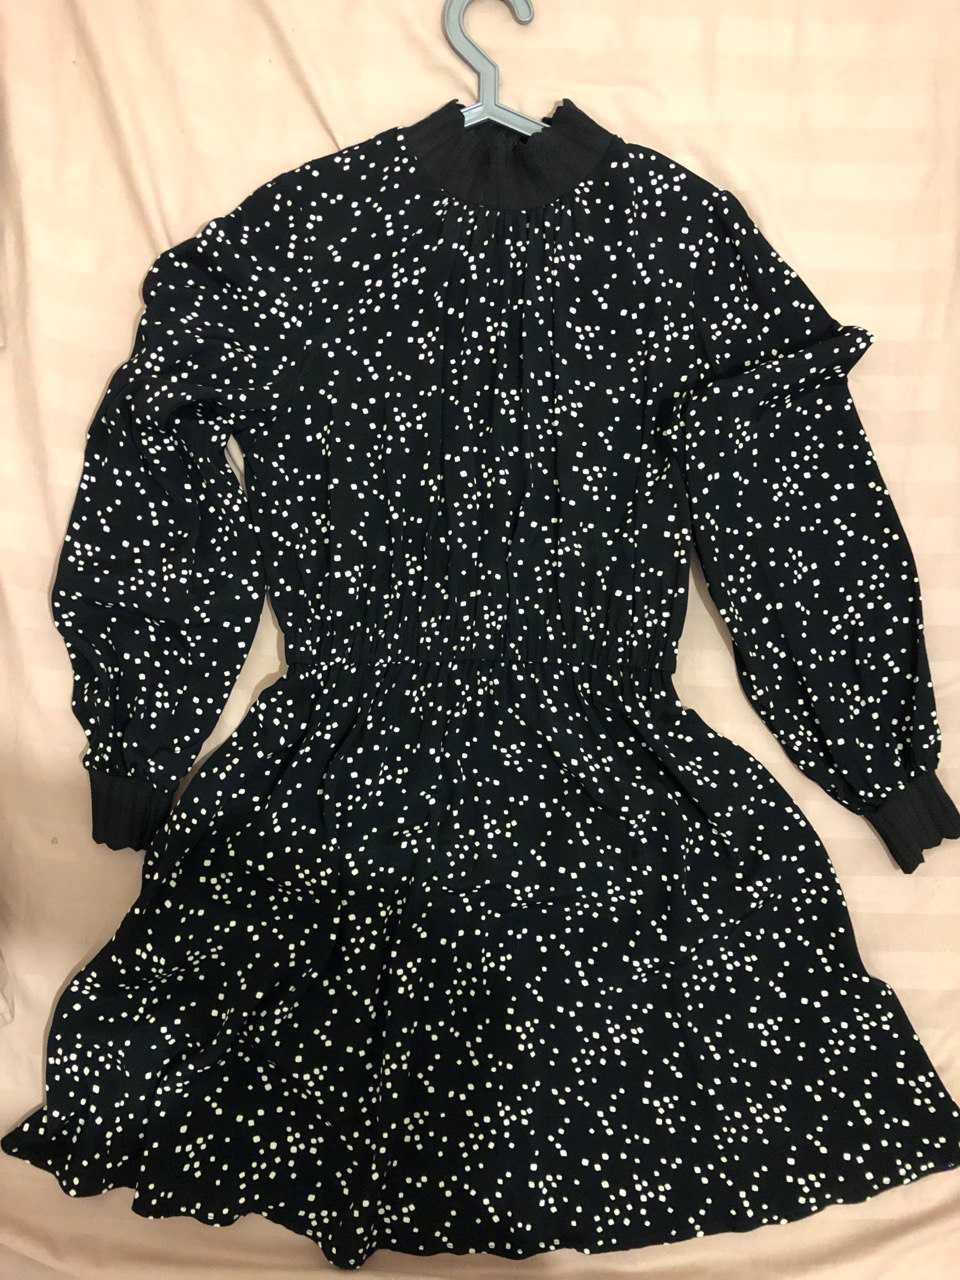 Сукня жіноча, чорна, білі крапки, розмір 38, Україна